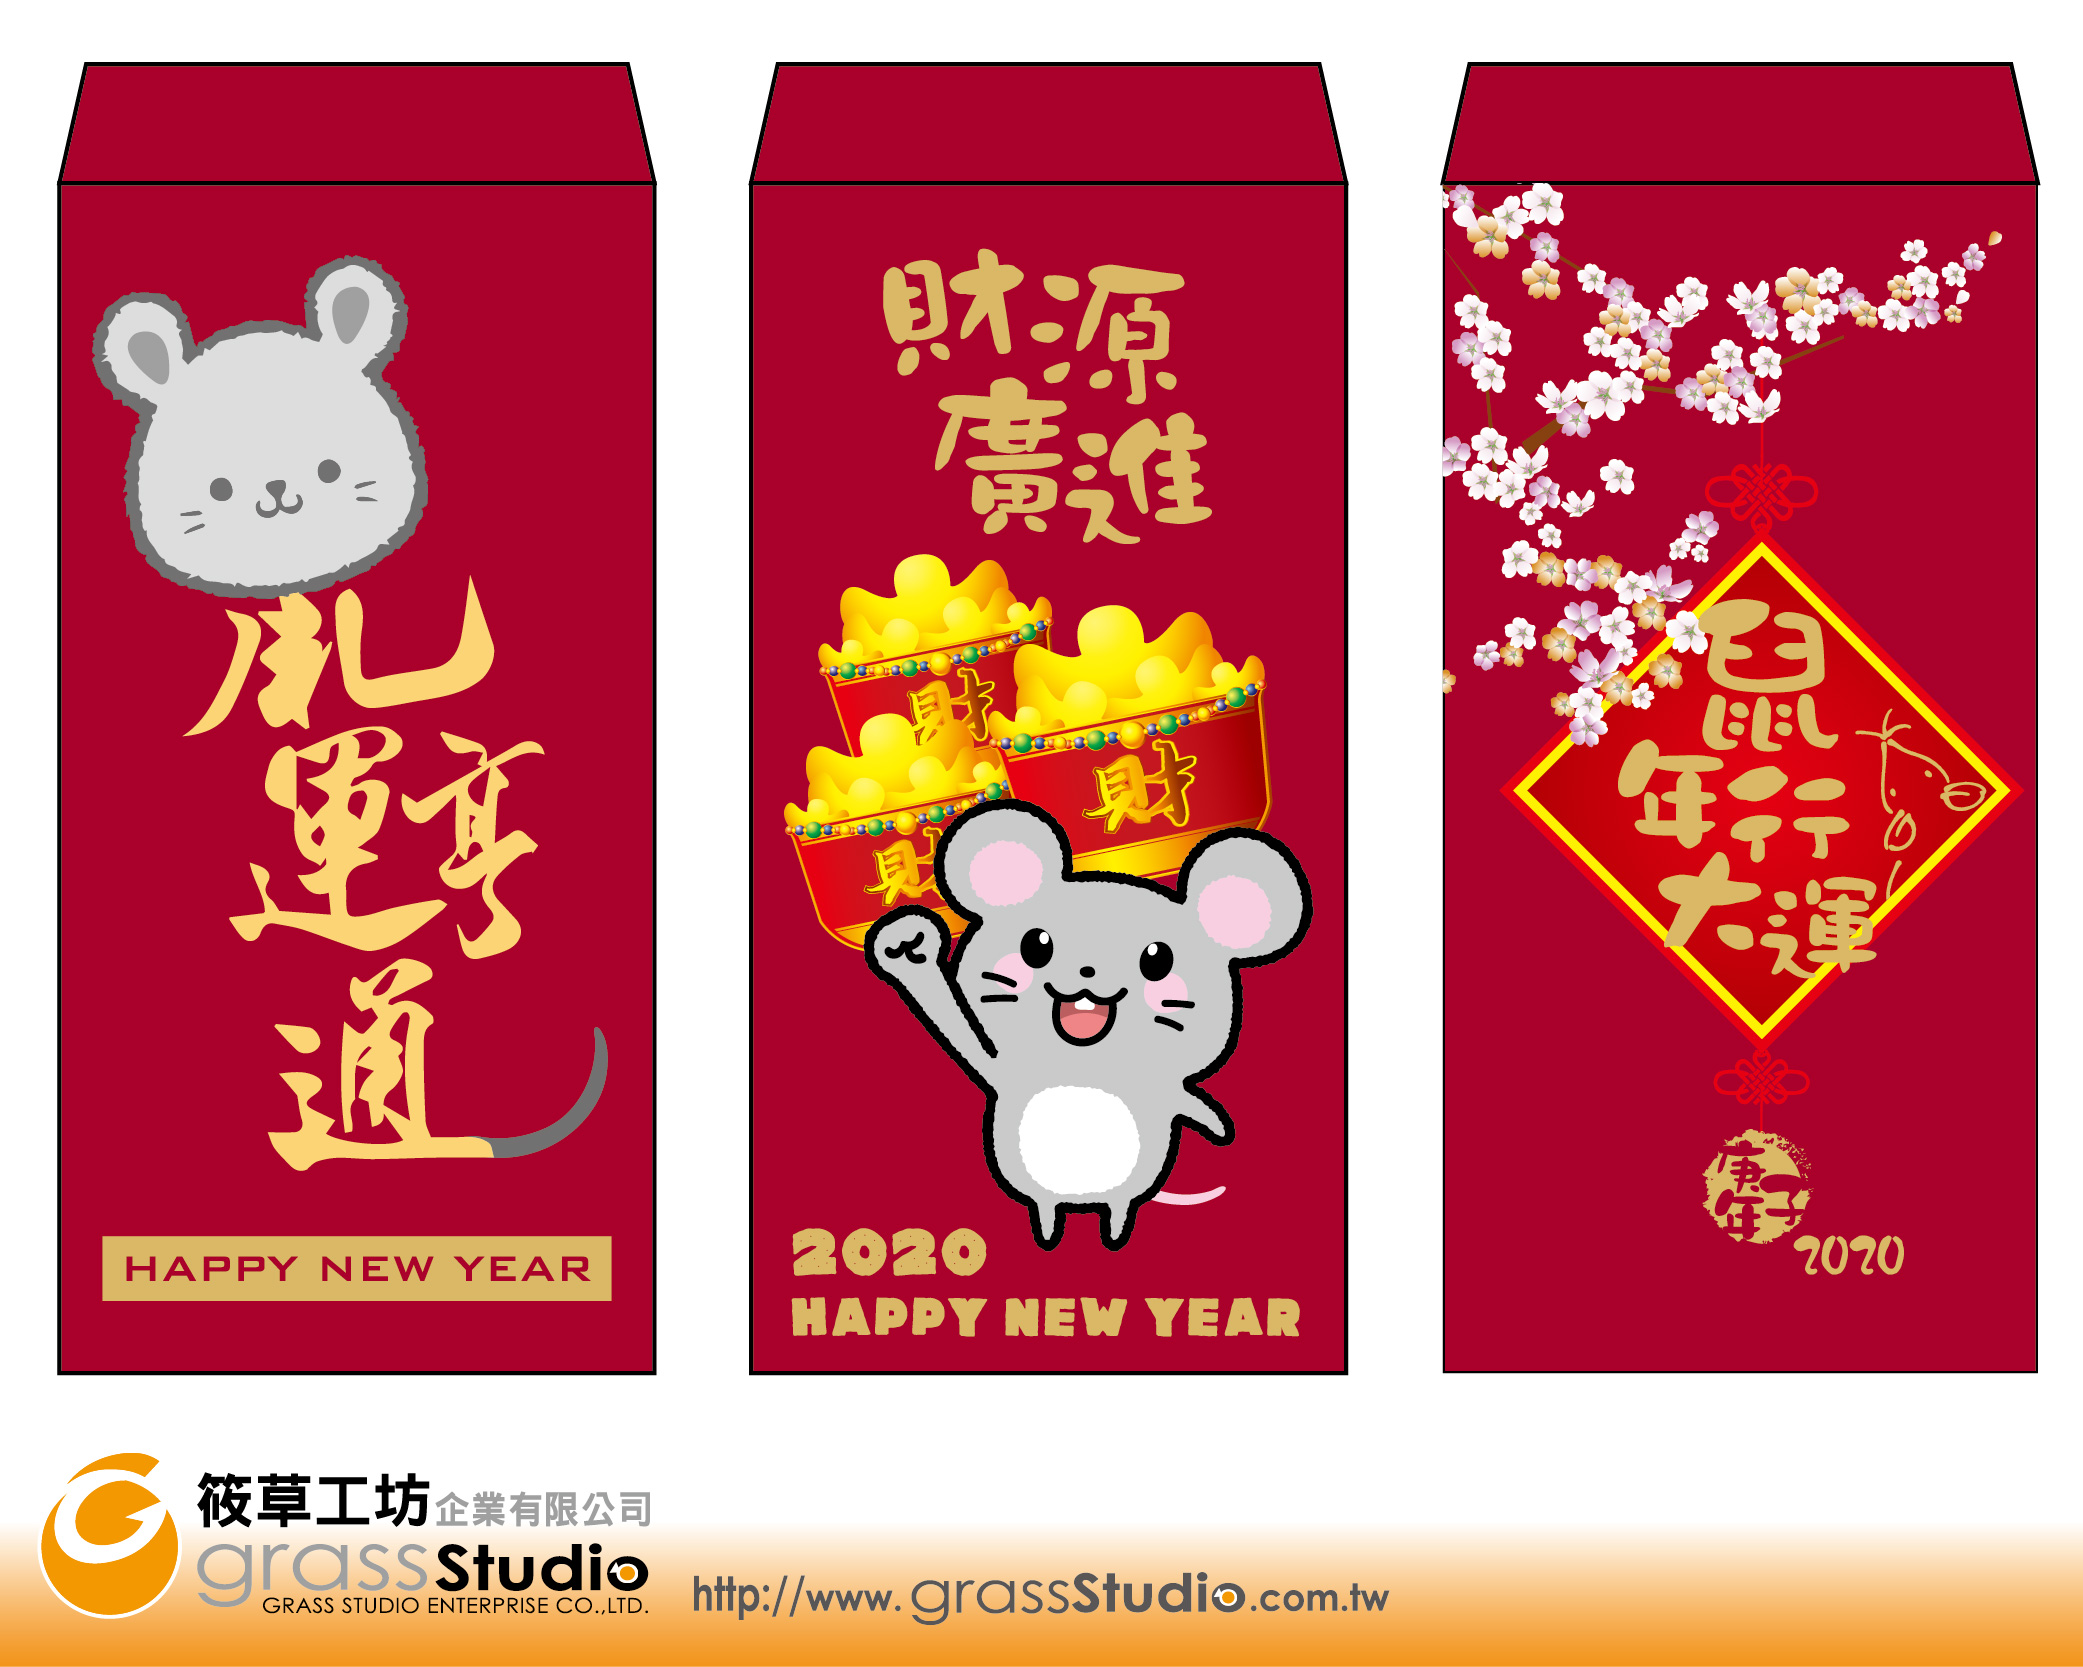 鼠年-現成中式紅包袋-燙金+彩印版